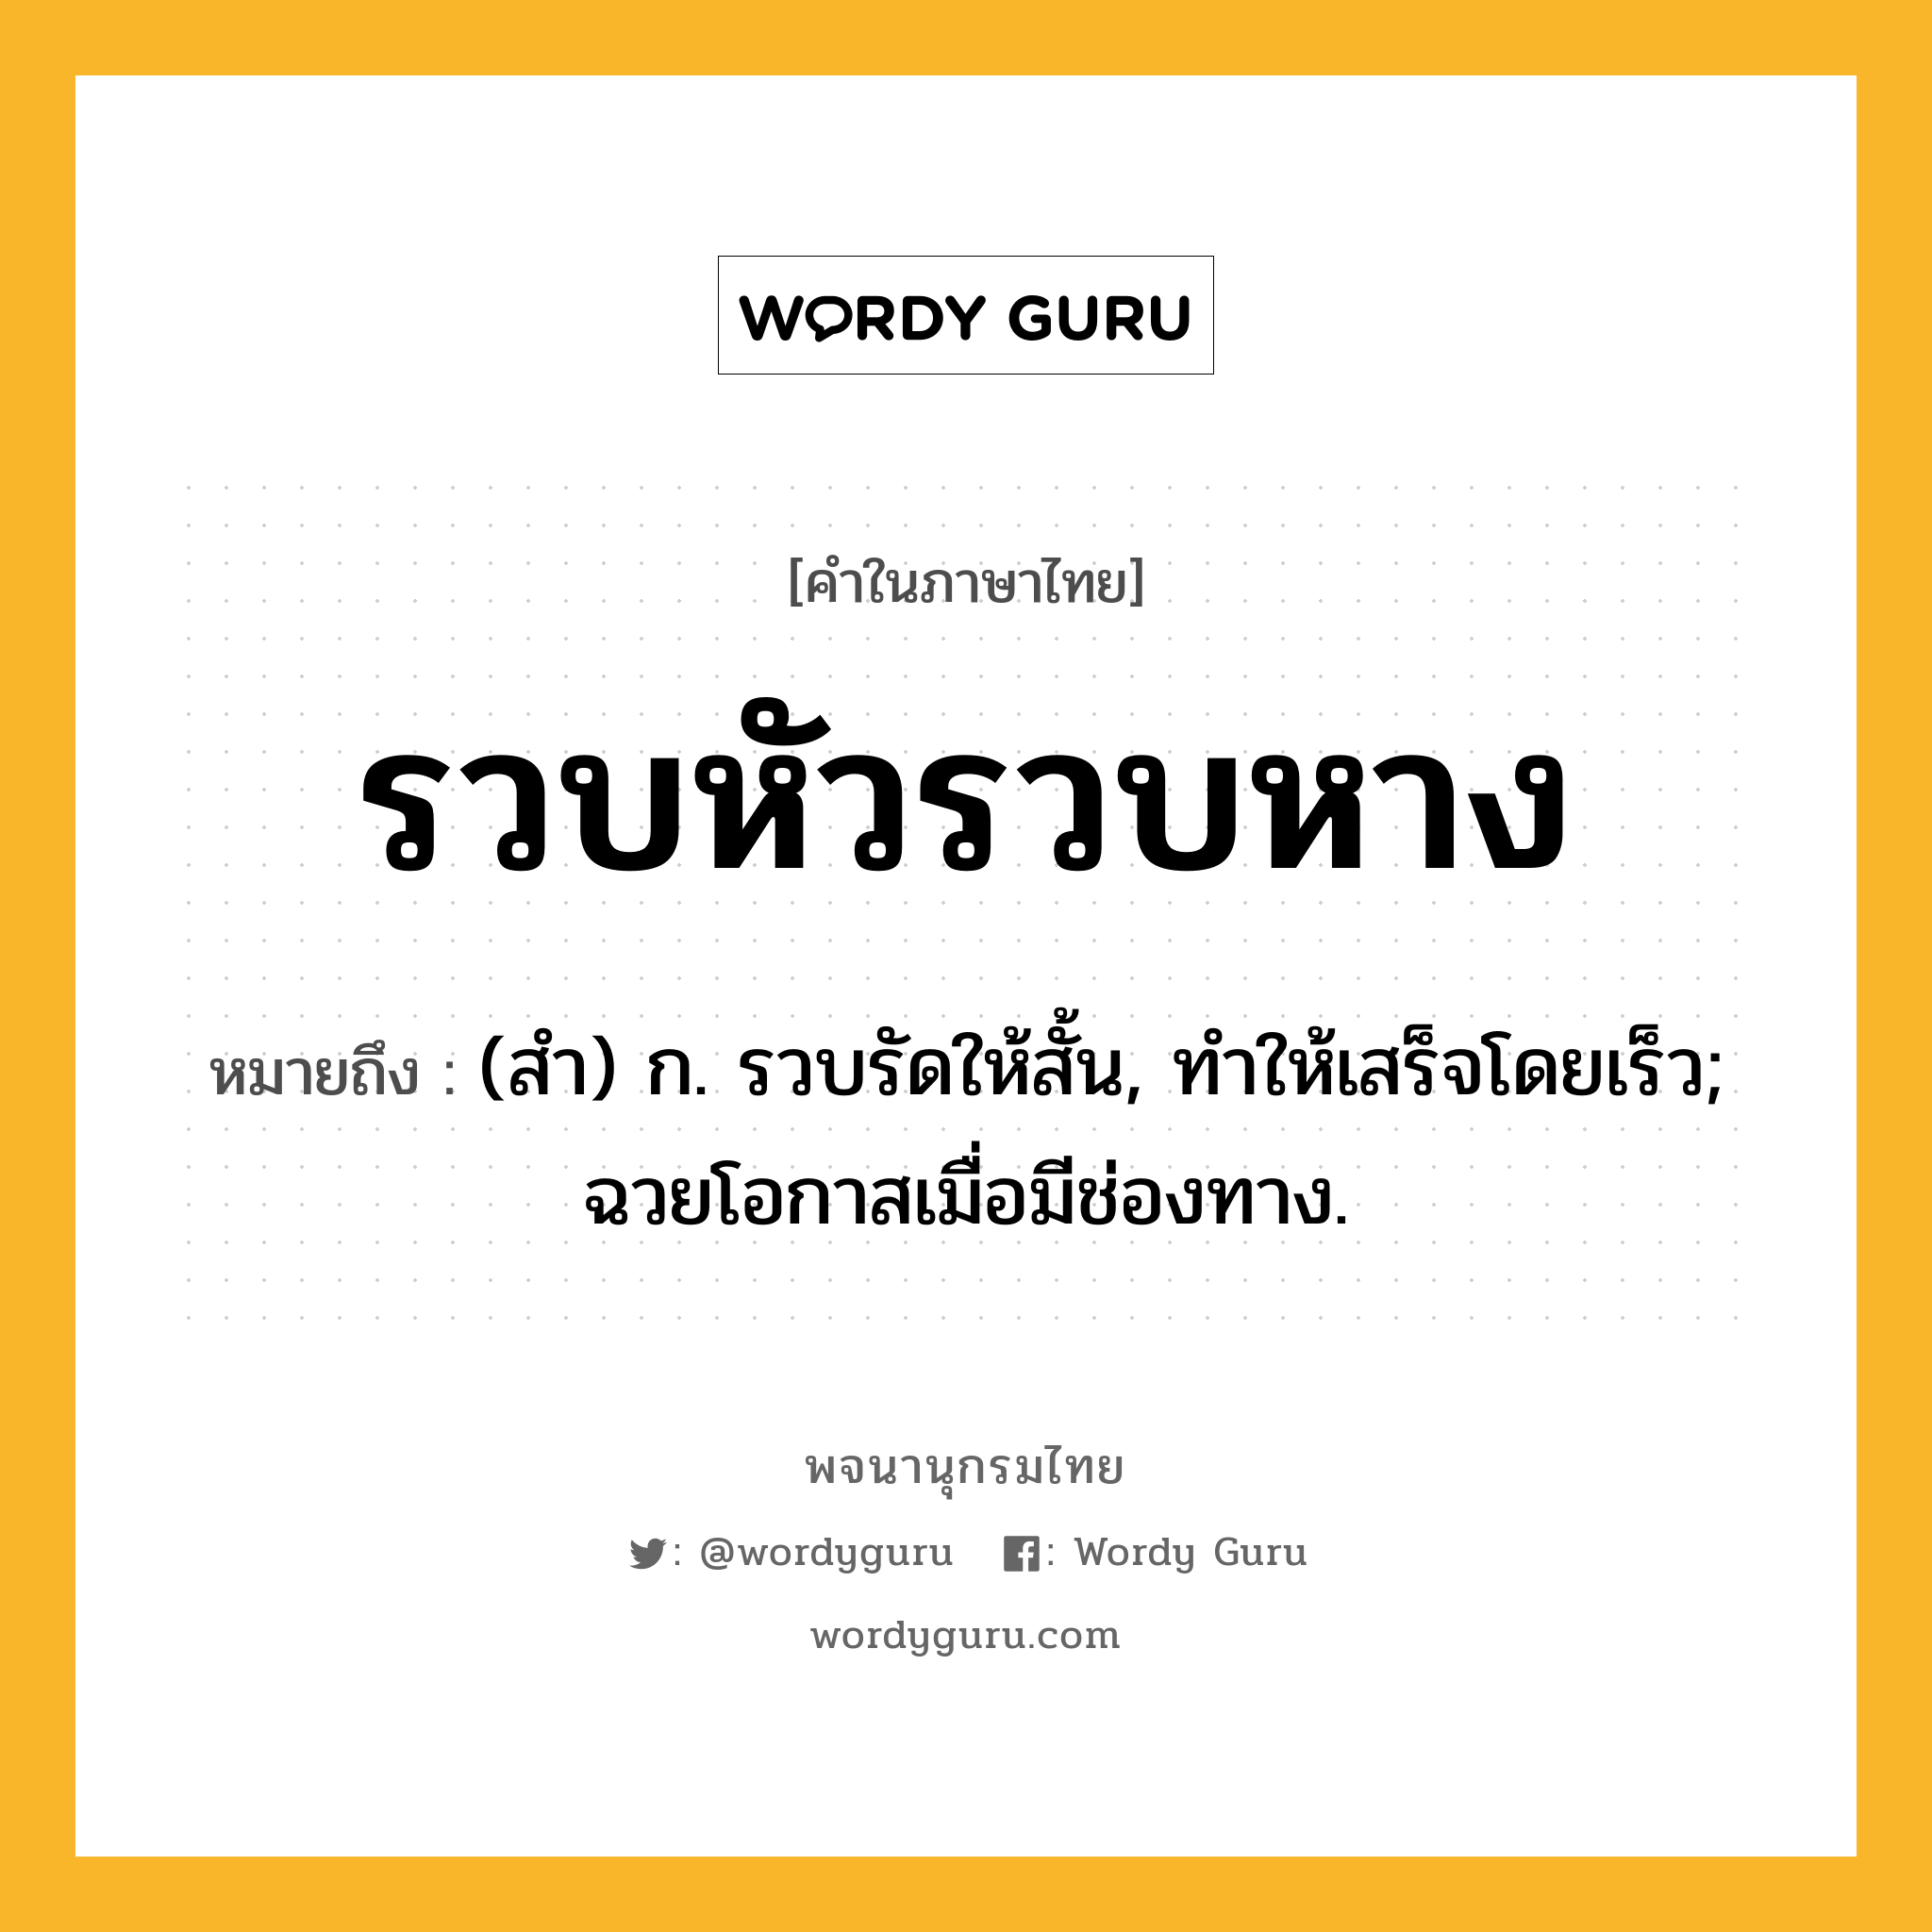 รวบหัวรวบหาง หมายถึงอะไร?, คำในภาษาไทย รวบหัวรวบหาง หมายถึง (สํา) ก. รวบรัดให้สั้น, ทําให้เสร็จโดยเร็ว; ฉวยโอกาสเมื่อมีช่องทาง.